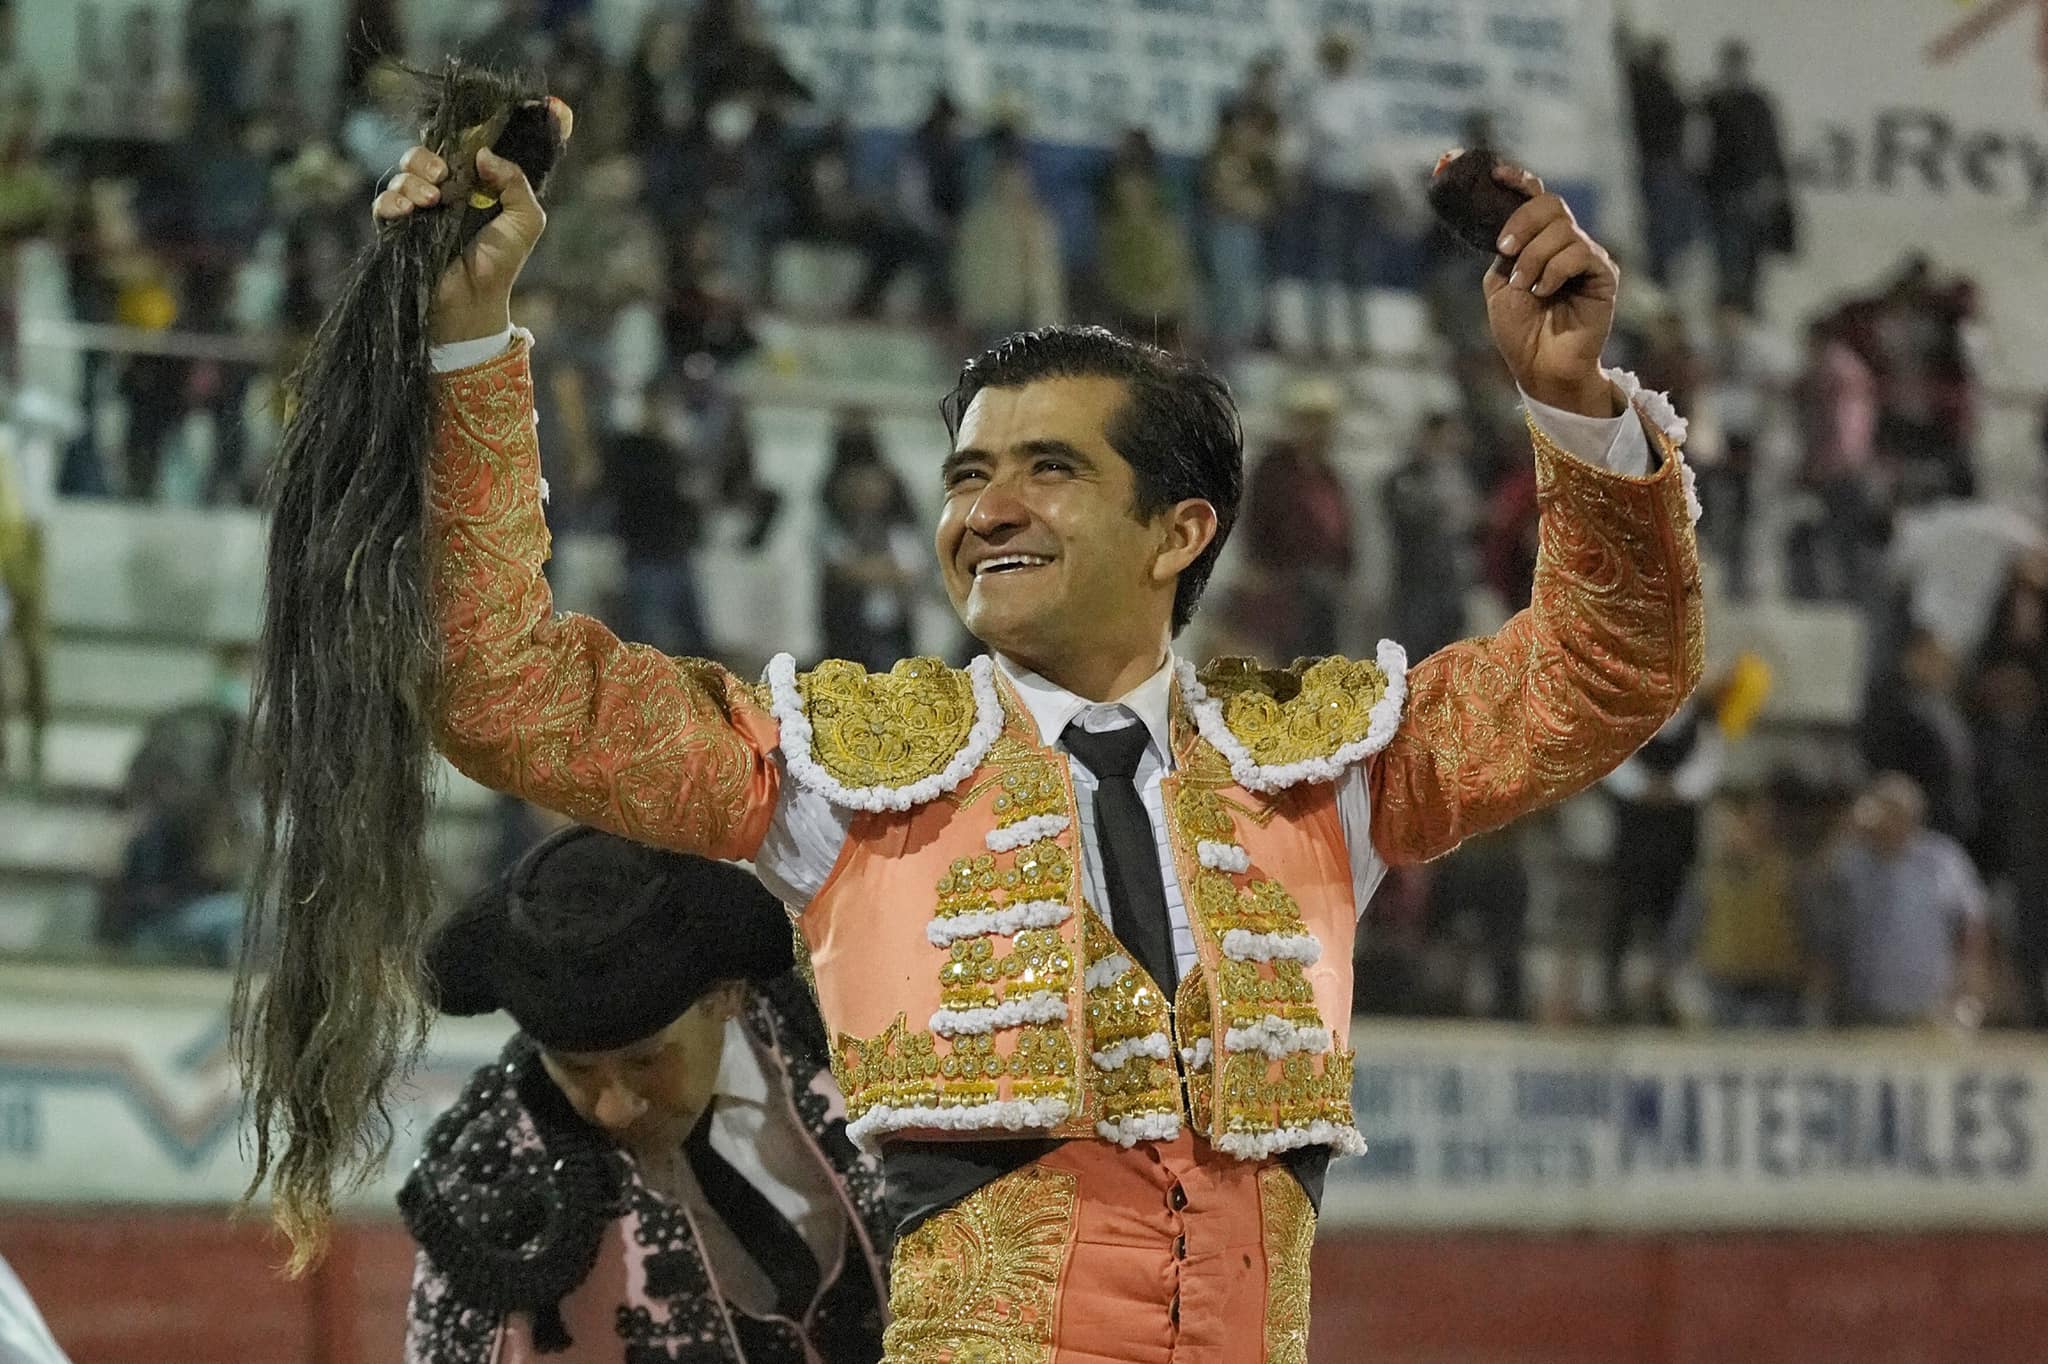 Joselito Adame por Daniel Luque en Cuenca